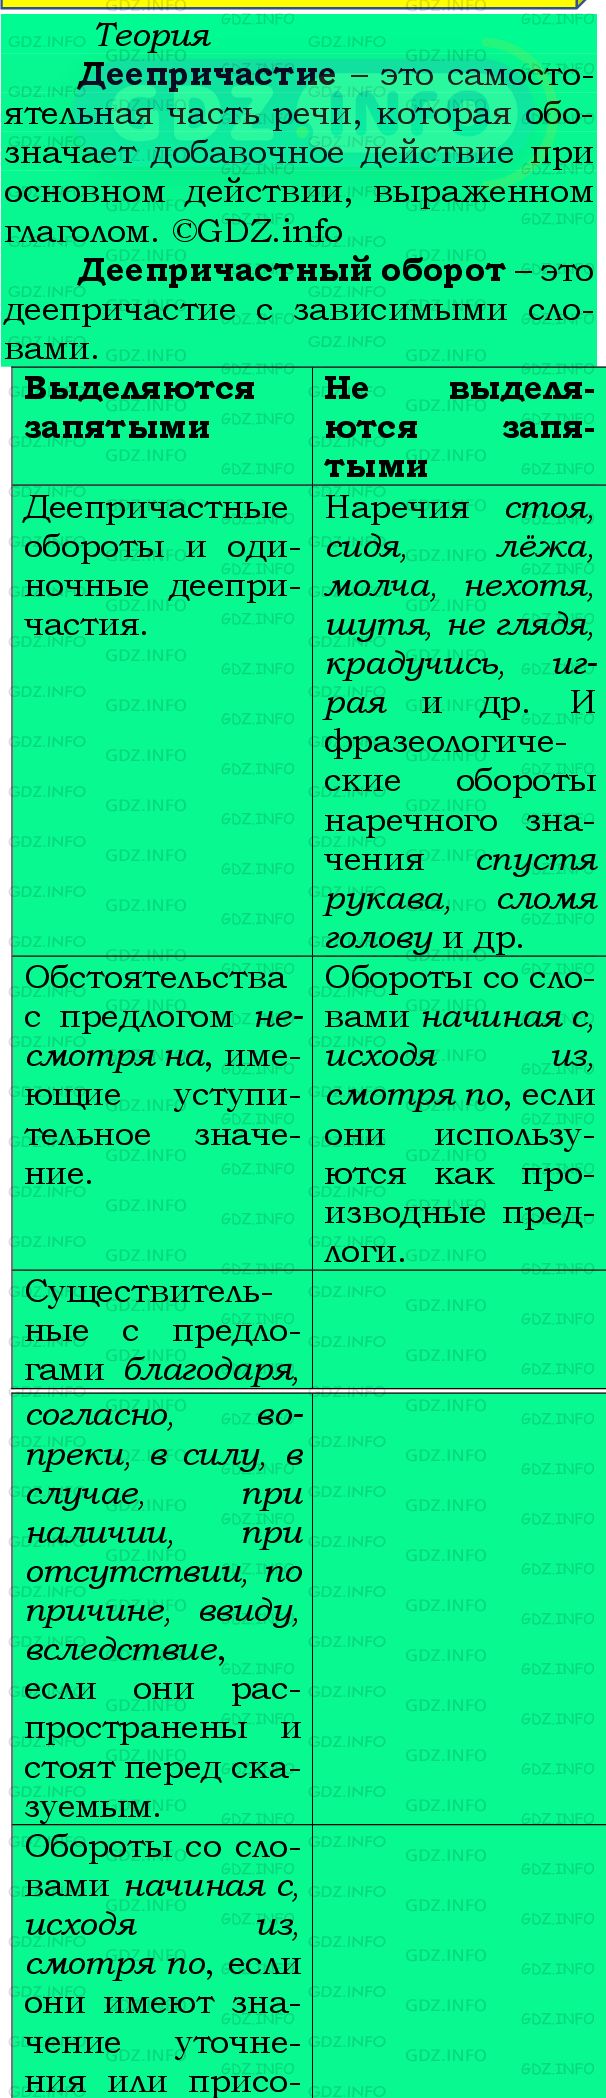 Фото подробного решения: Номер №415 из ГДЗ по Русскому языку 8 класс: Бархударов С.Г.